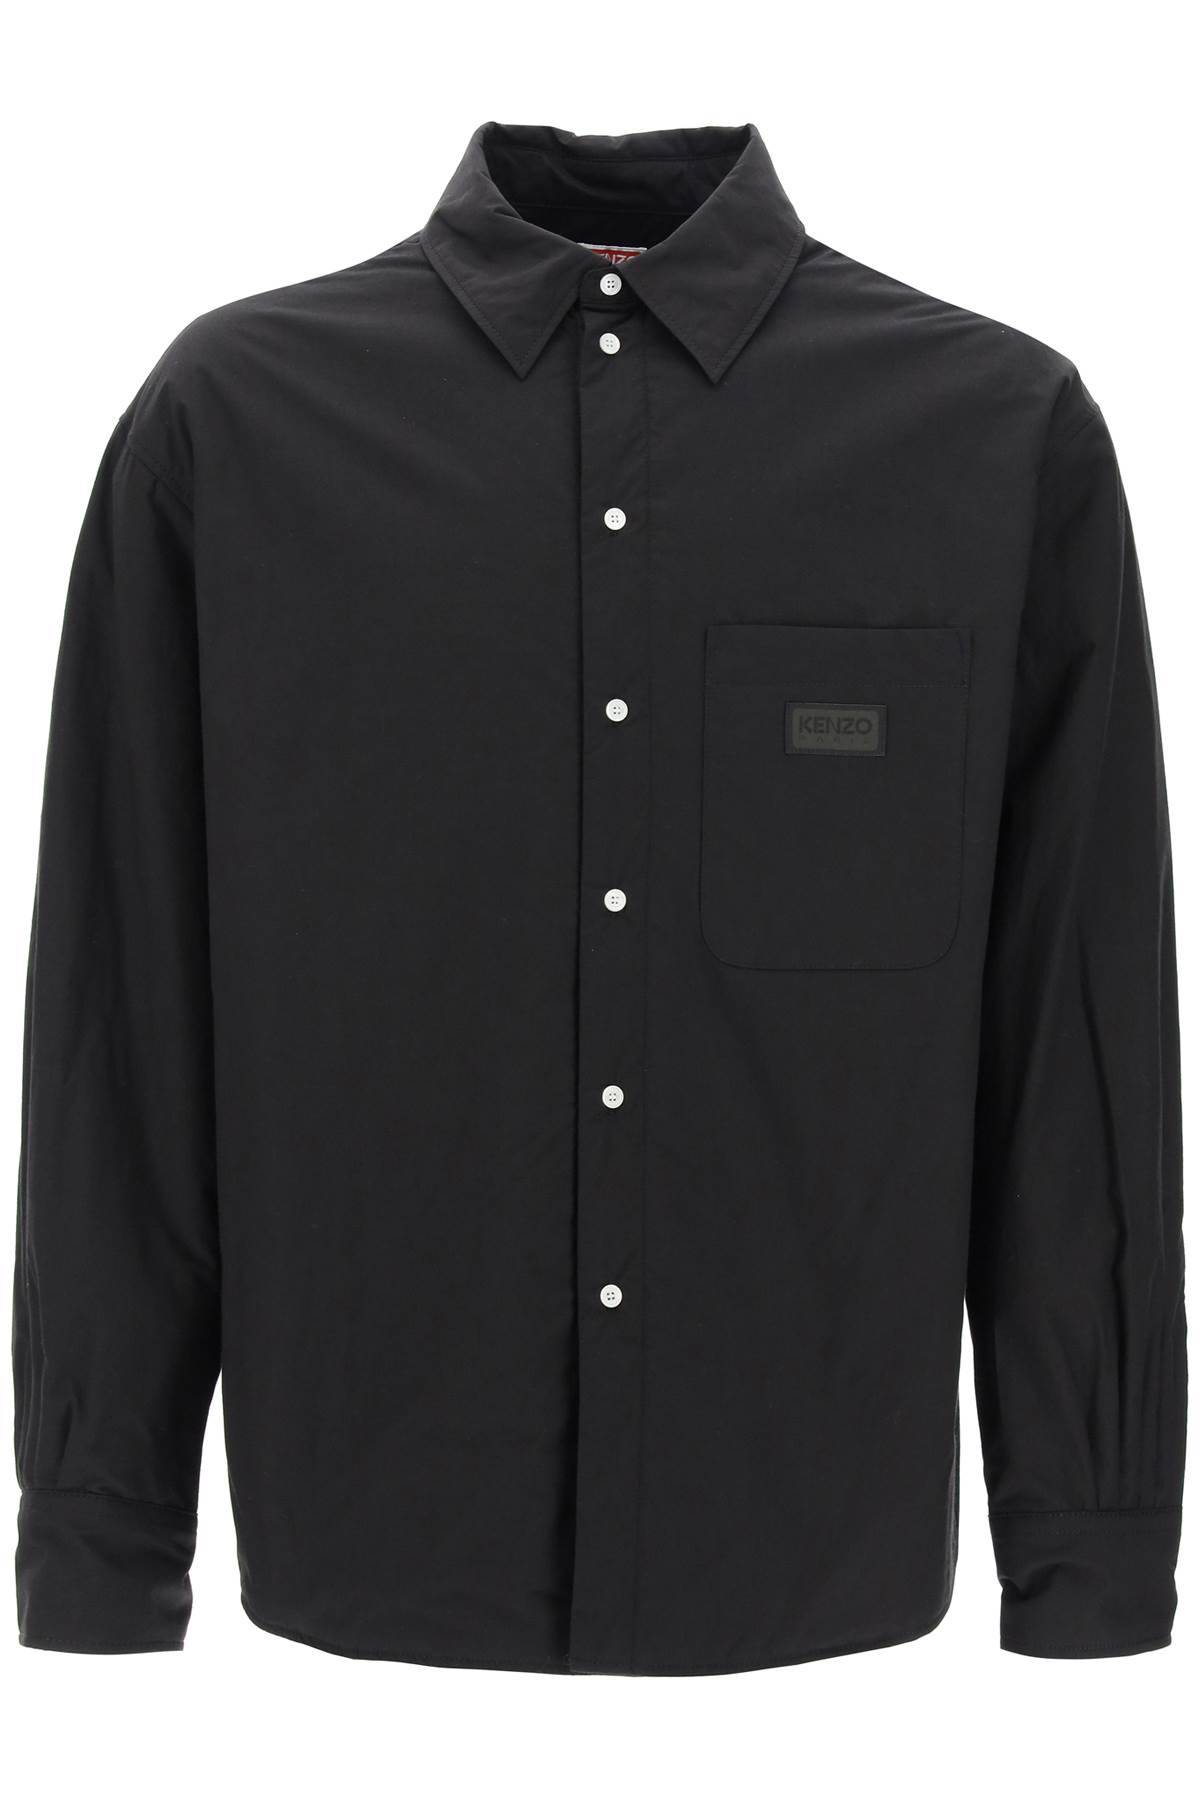 Kenzo Overshirt Imbottita In Black